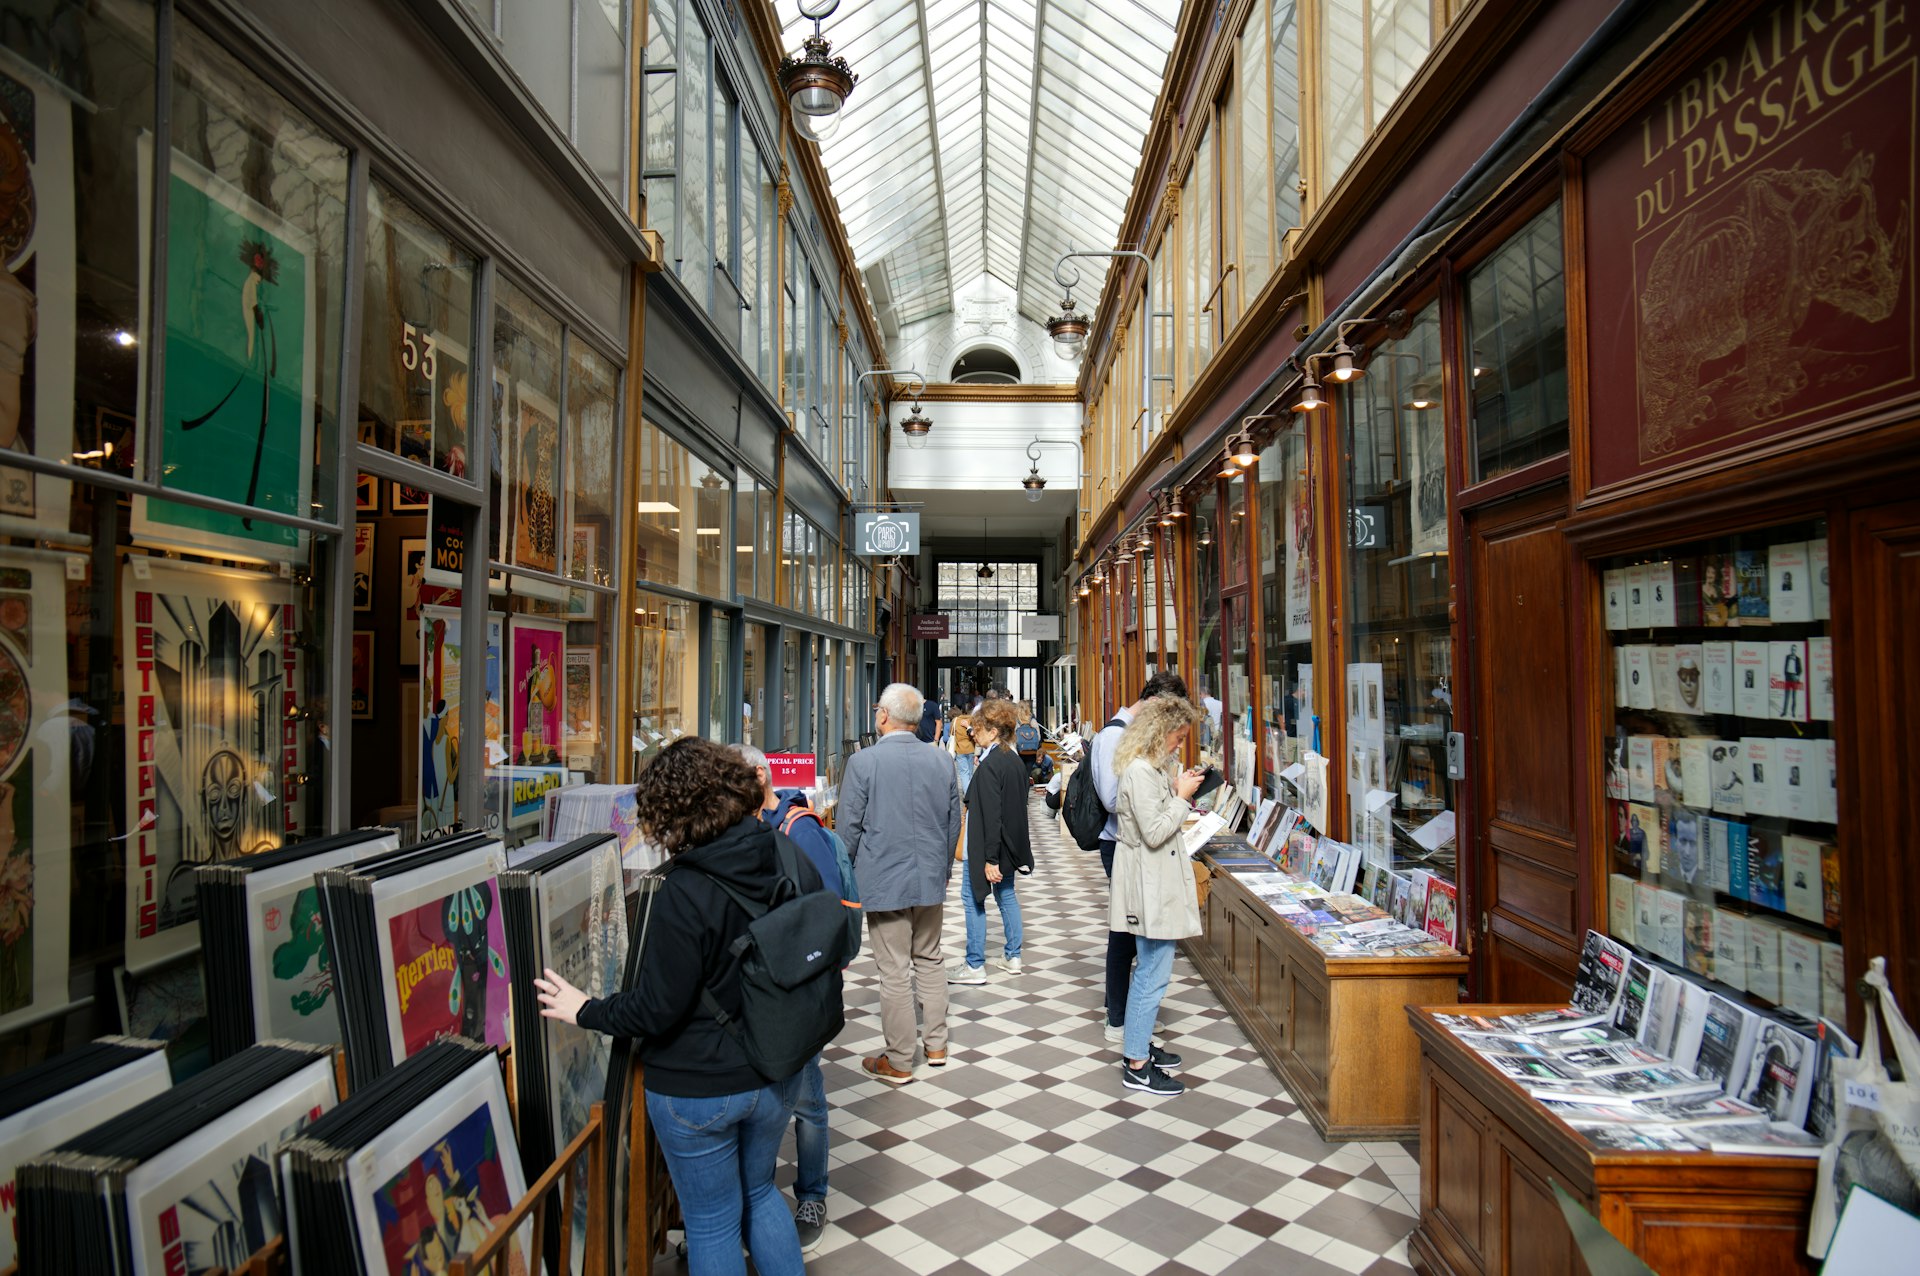 People browsing shops in Passage des Panoramas, Paris